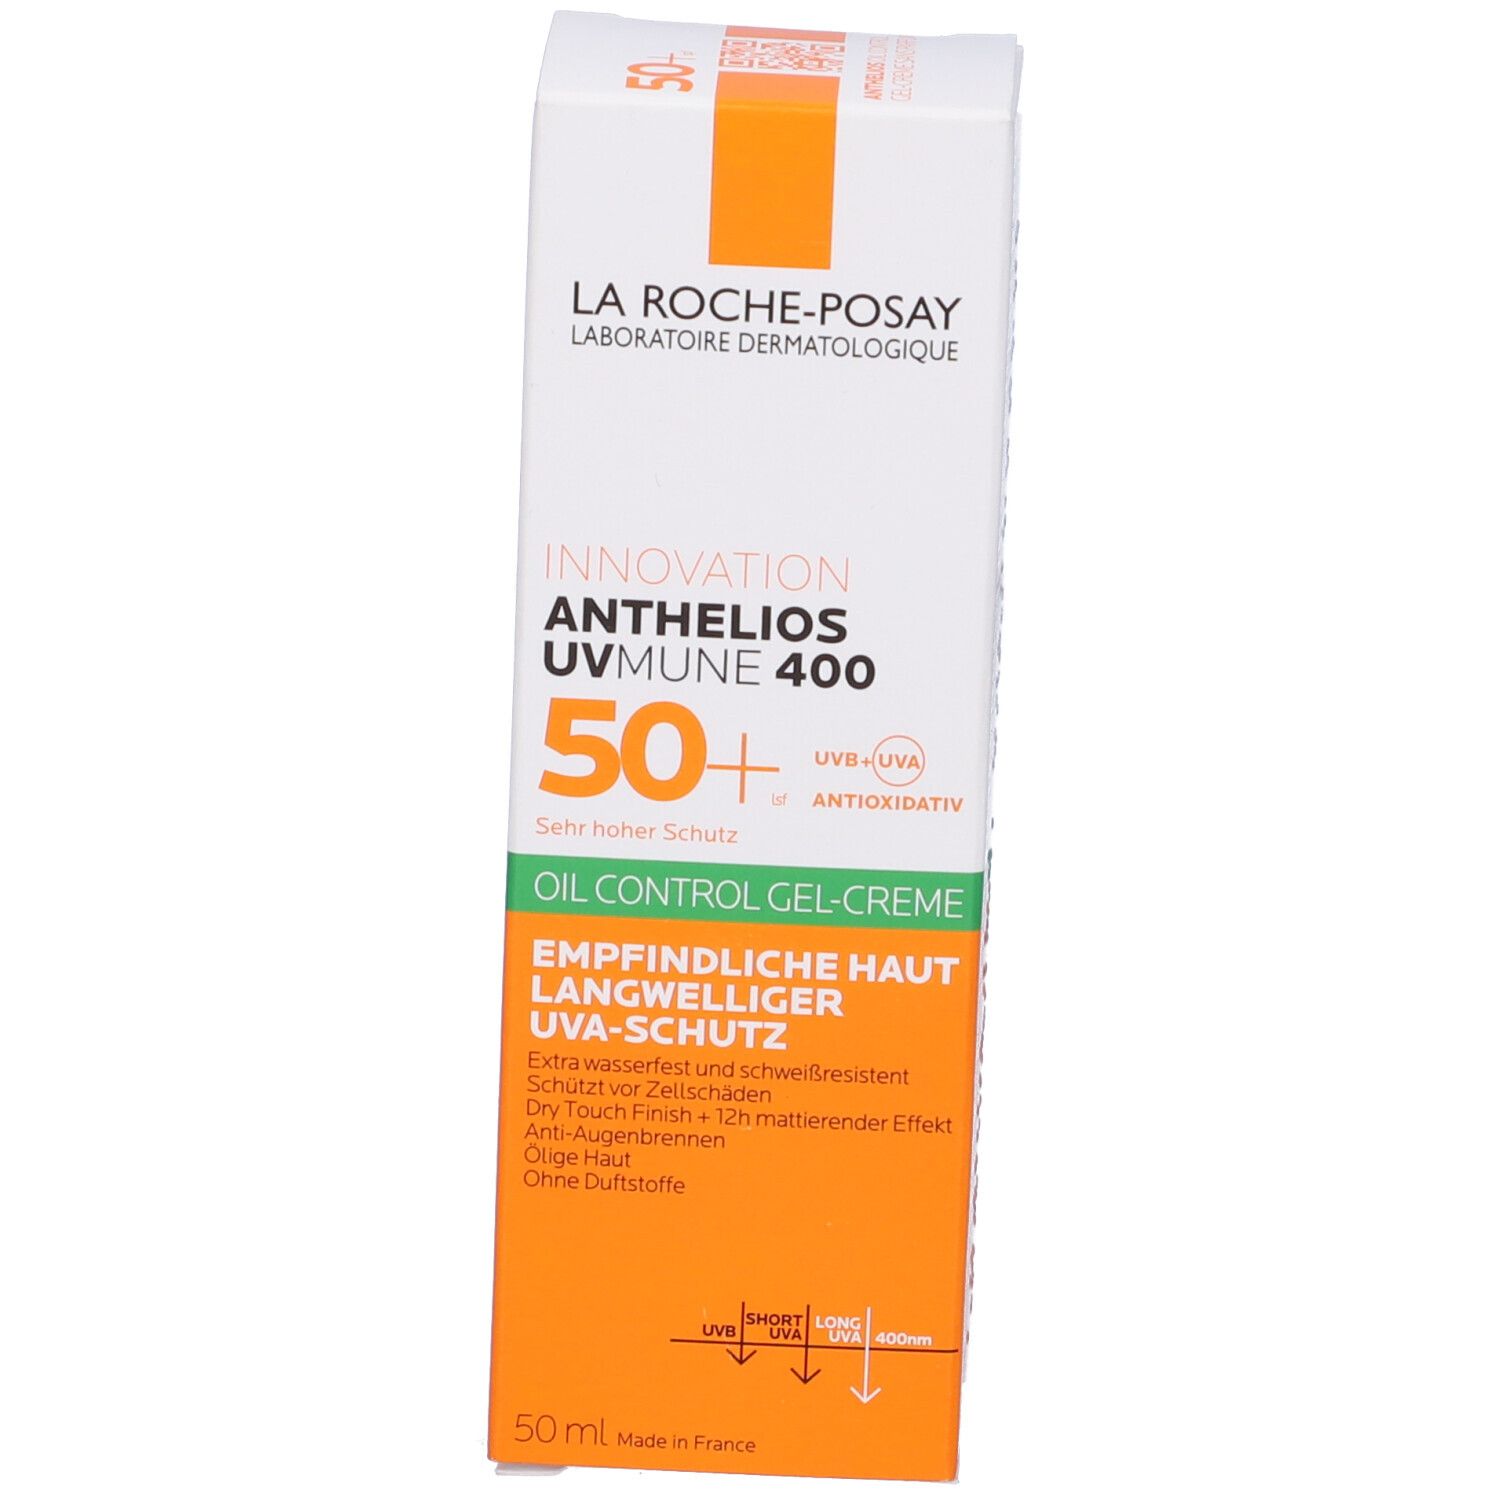 La Roche-Posay Anthelios Gel Crema Solare Viso tocco secco Anti-lucidità SPF50+ 50 ml